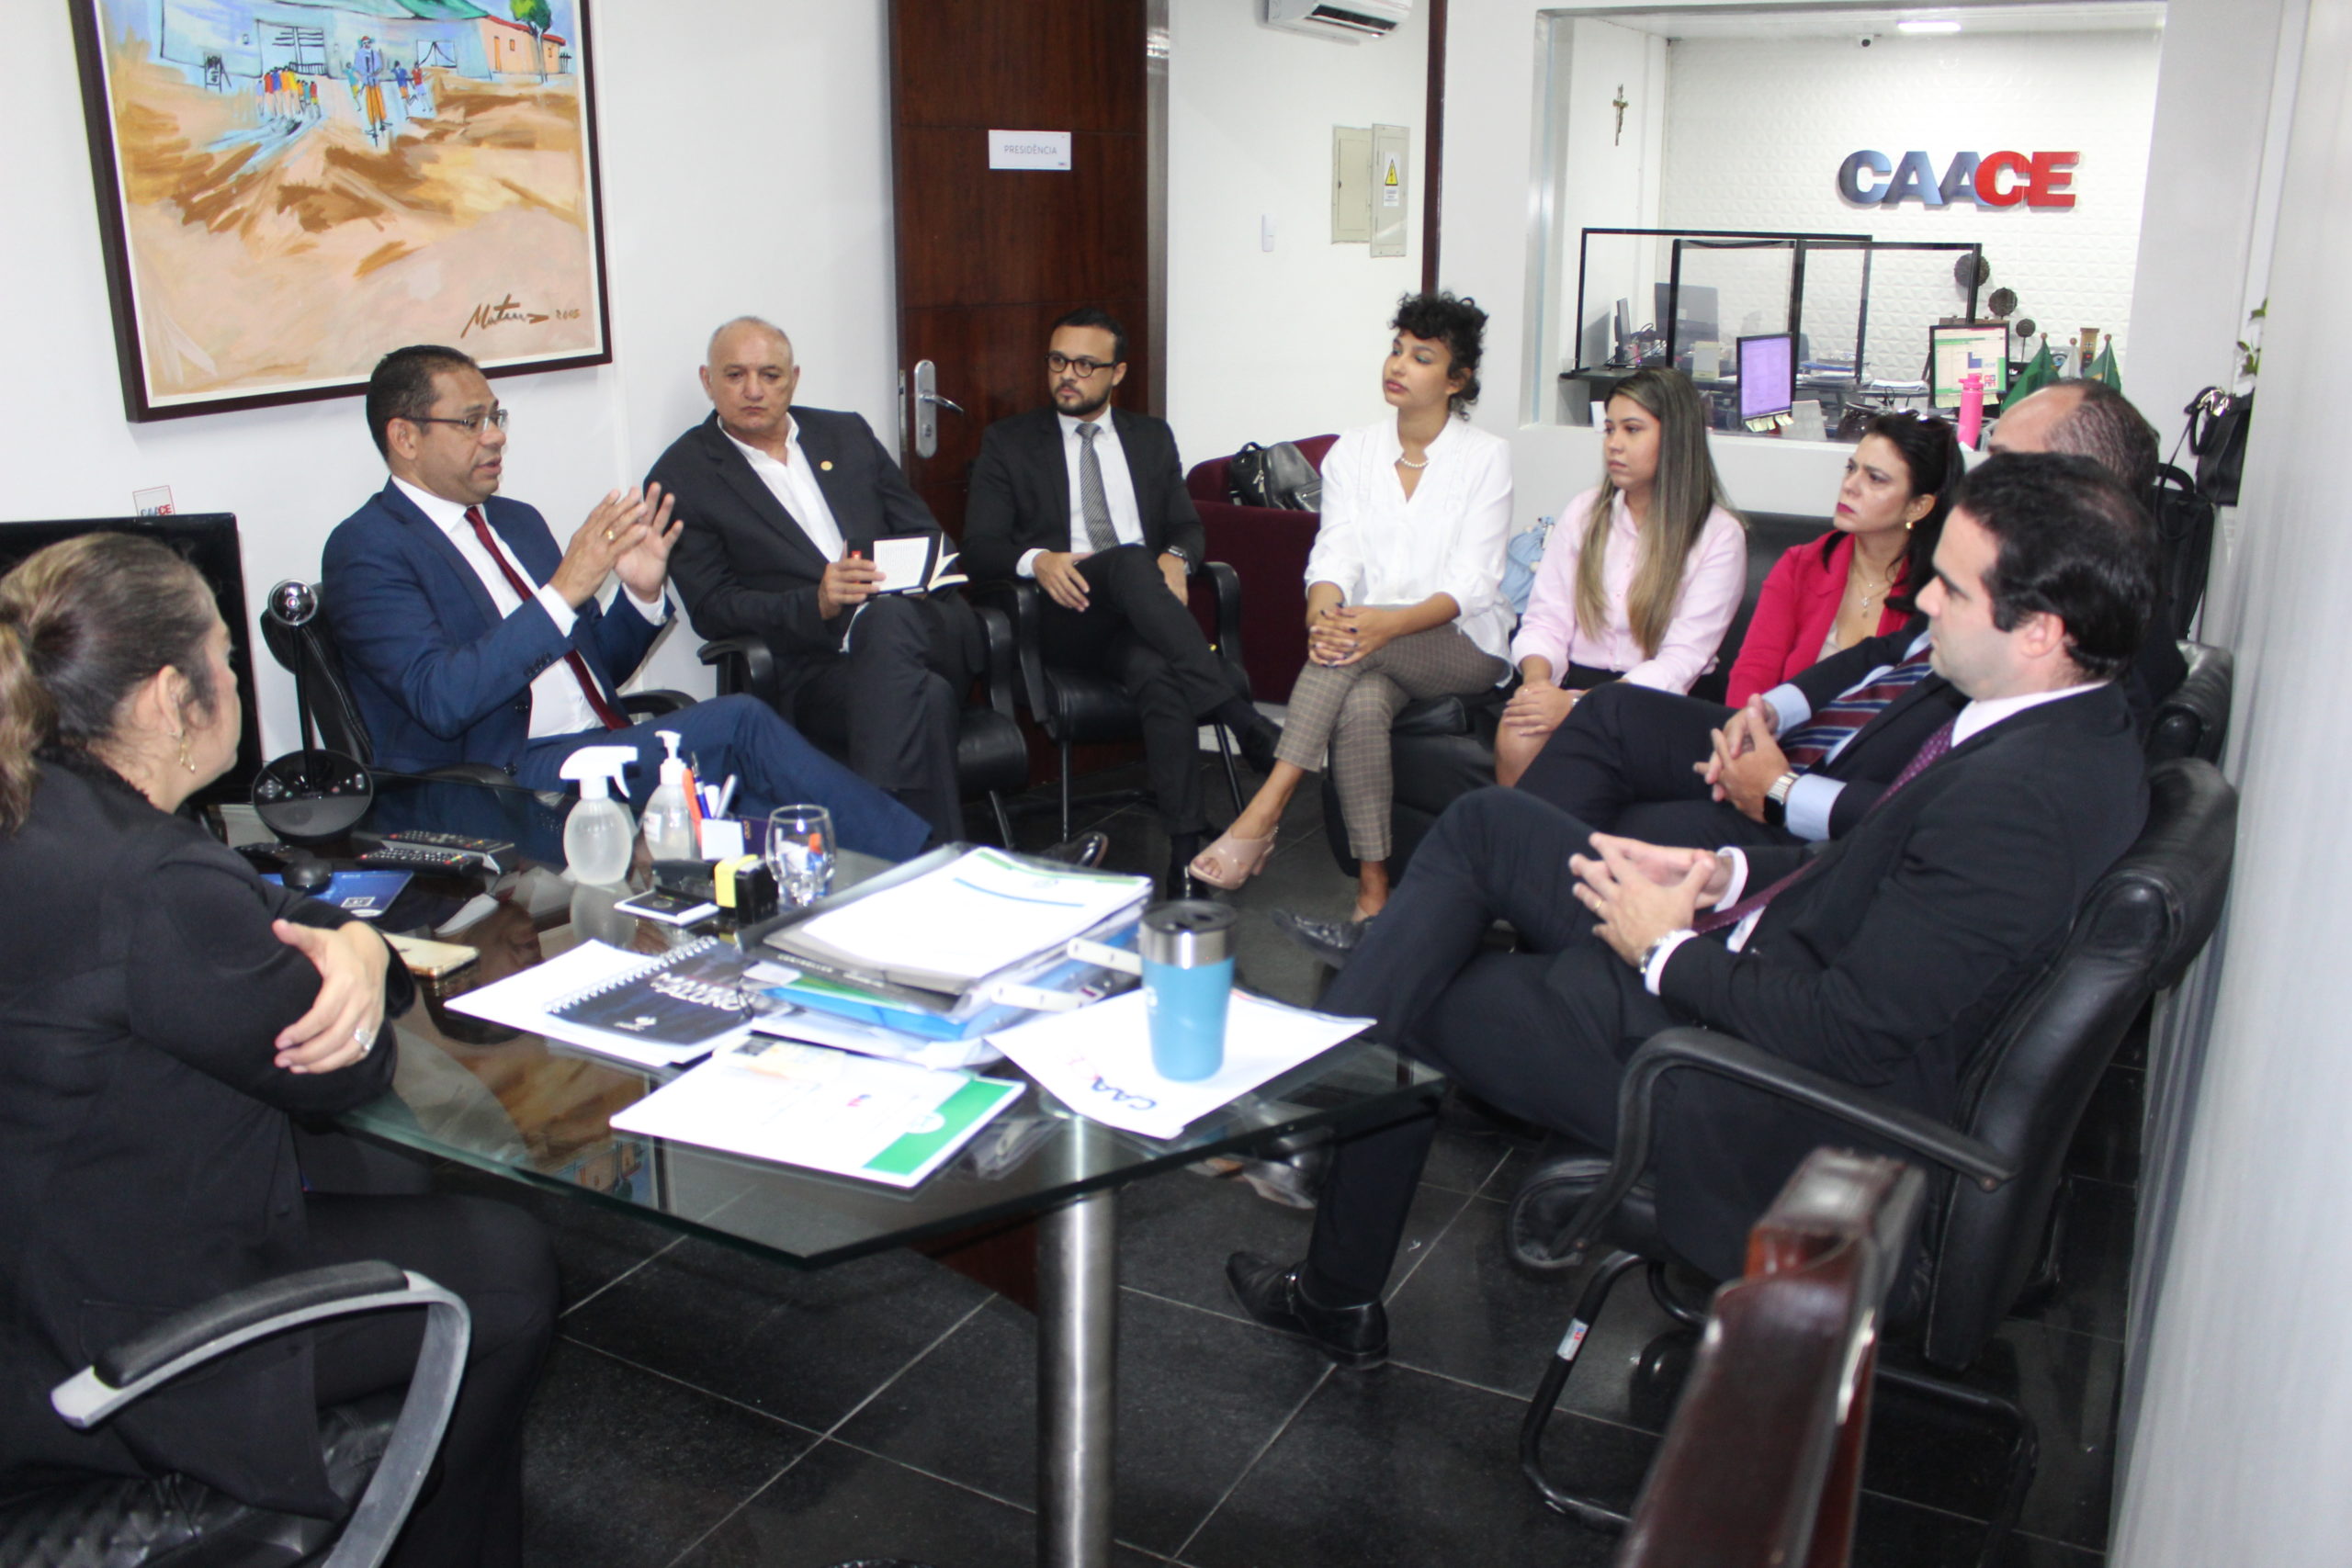 Futuro desembargador, advogado André Costa visita sede da CAACE e se reúne com diretoria